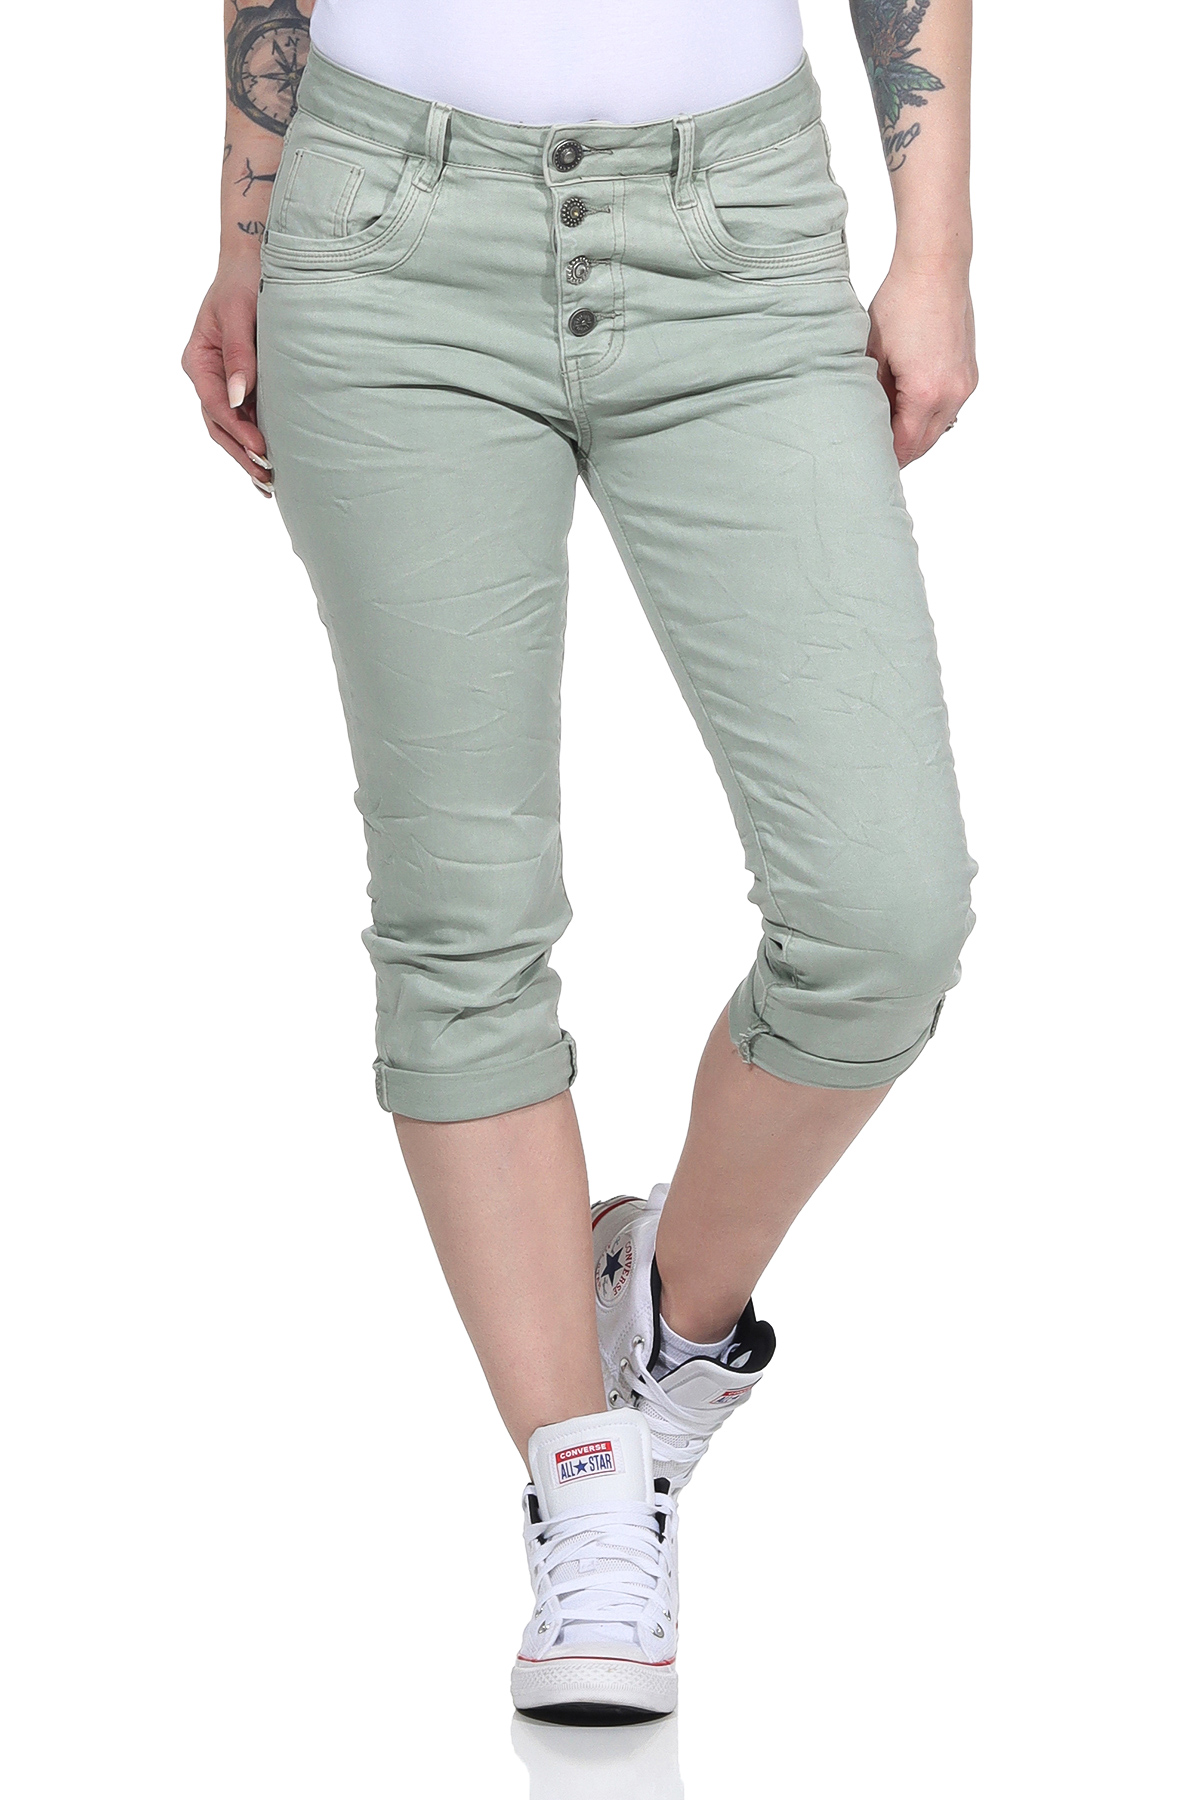 Damen Capri Jeans 7/8 Kurze Stretch Hüfthose Bermuda 3/4 Hose Risse 651 